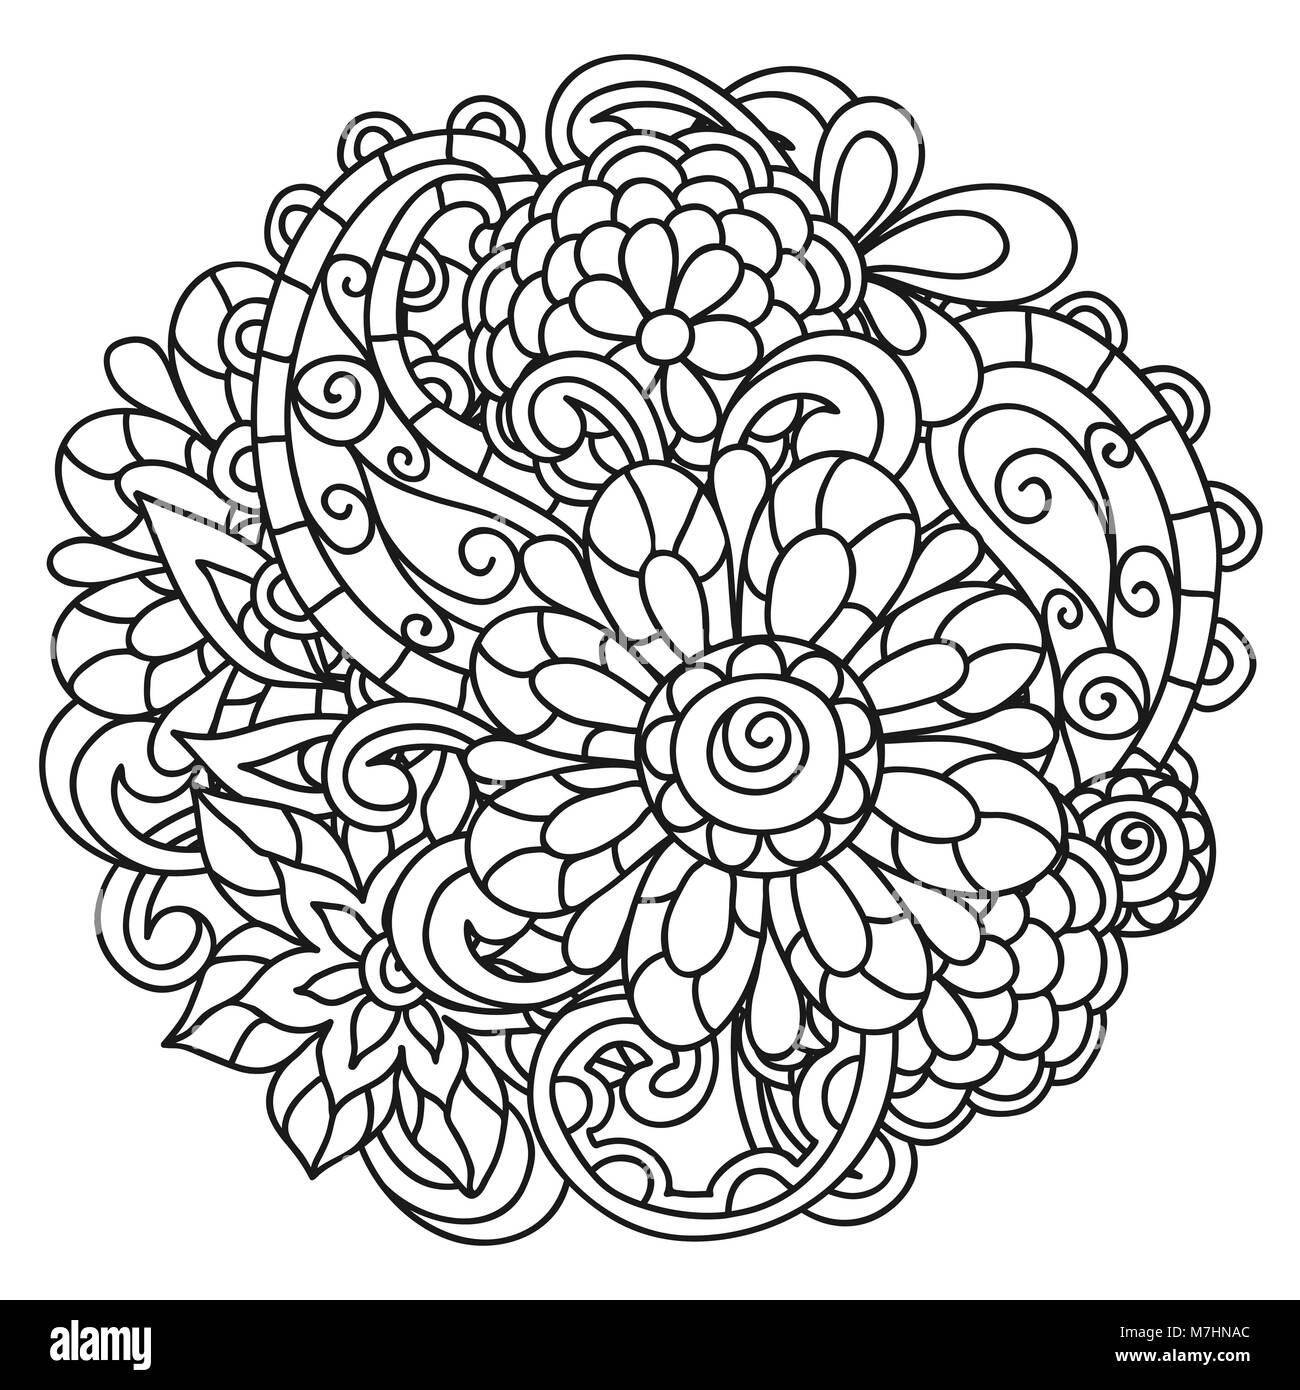 Adult Flower Coloring Seite zum Zeichnen. Blumendruck Blumenzweig ...